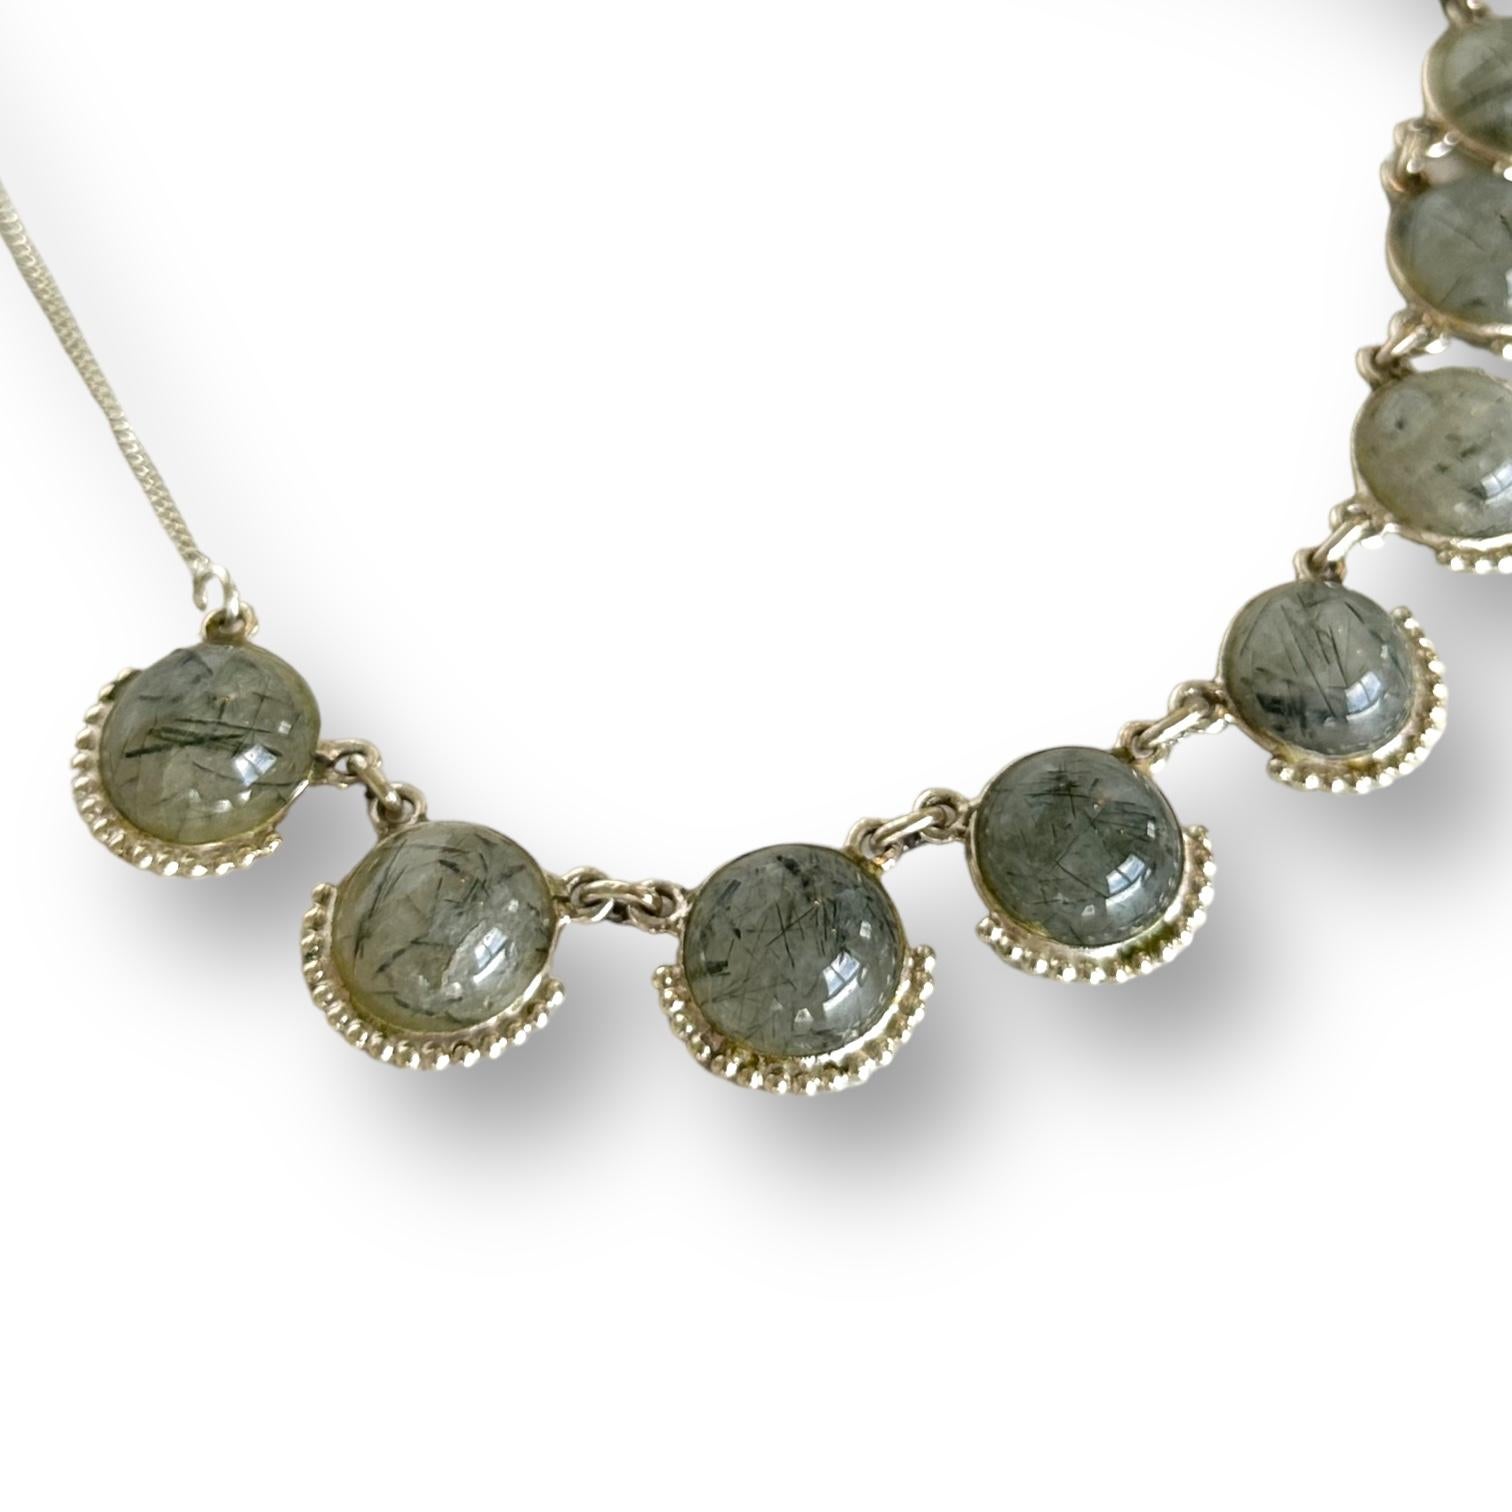 9 schwarze Turmaline in Quarz Halskette in Silber gefasst. 
Länge der Halskette: 18,1 Zoll/46 cm.
Abmessungen des Berylls: rund, 12 mm.
Anzahl der Steine: 9.
Gesamtgewicht: 25 Gramm.